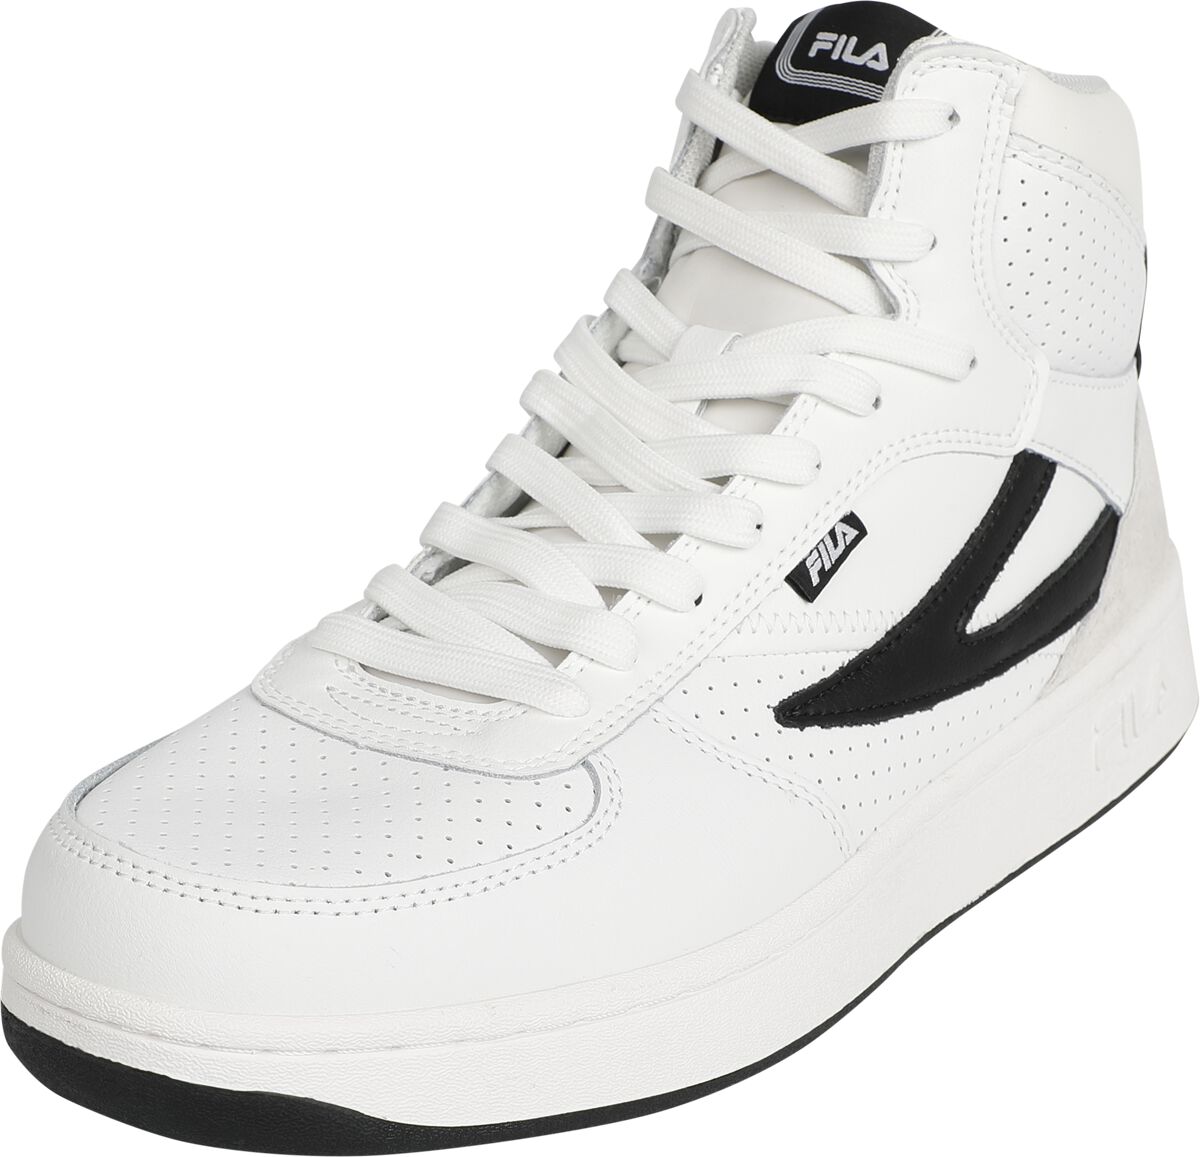 Fila Sneaker high - FILA SEVARO mid - EU41 bis EU45 - für Männer - Größe EU41 - weiß/schwarz von Fila